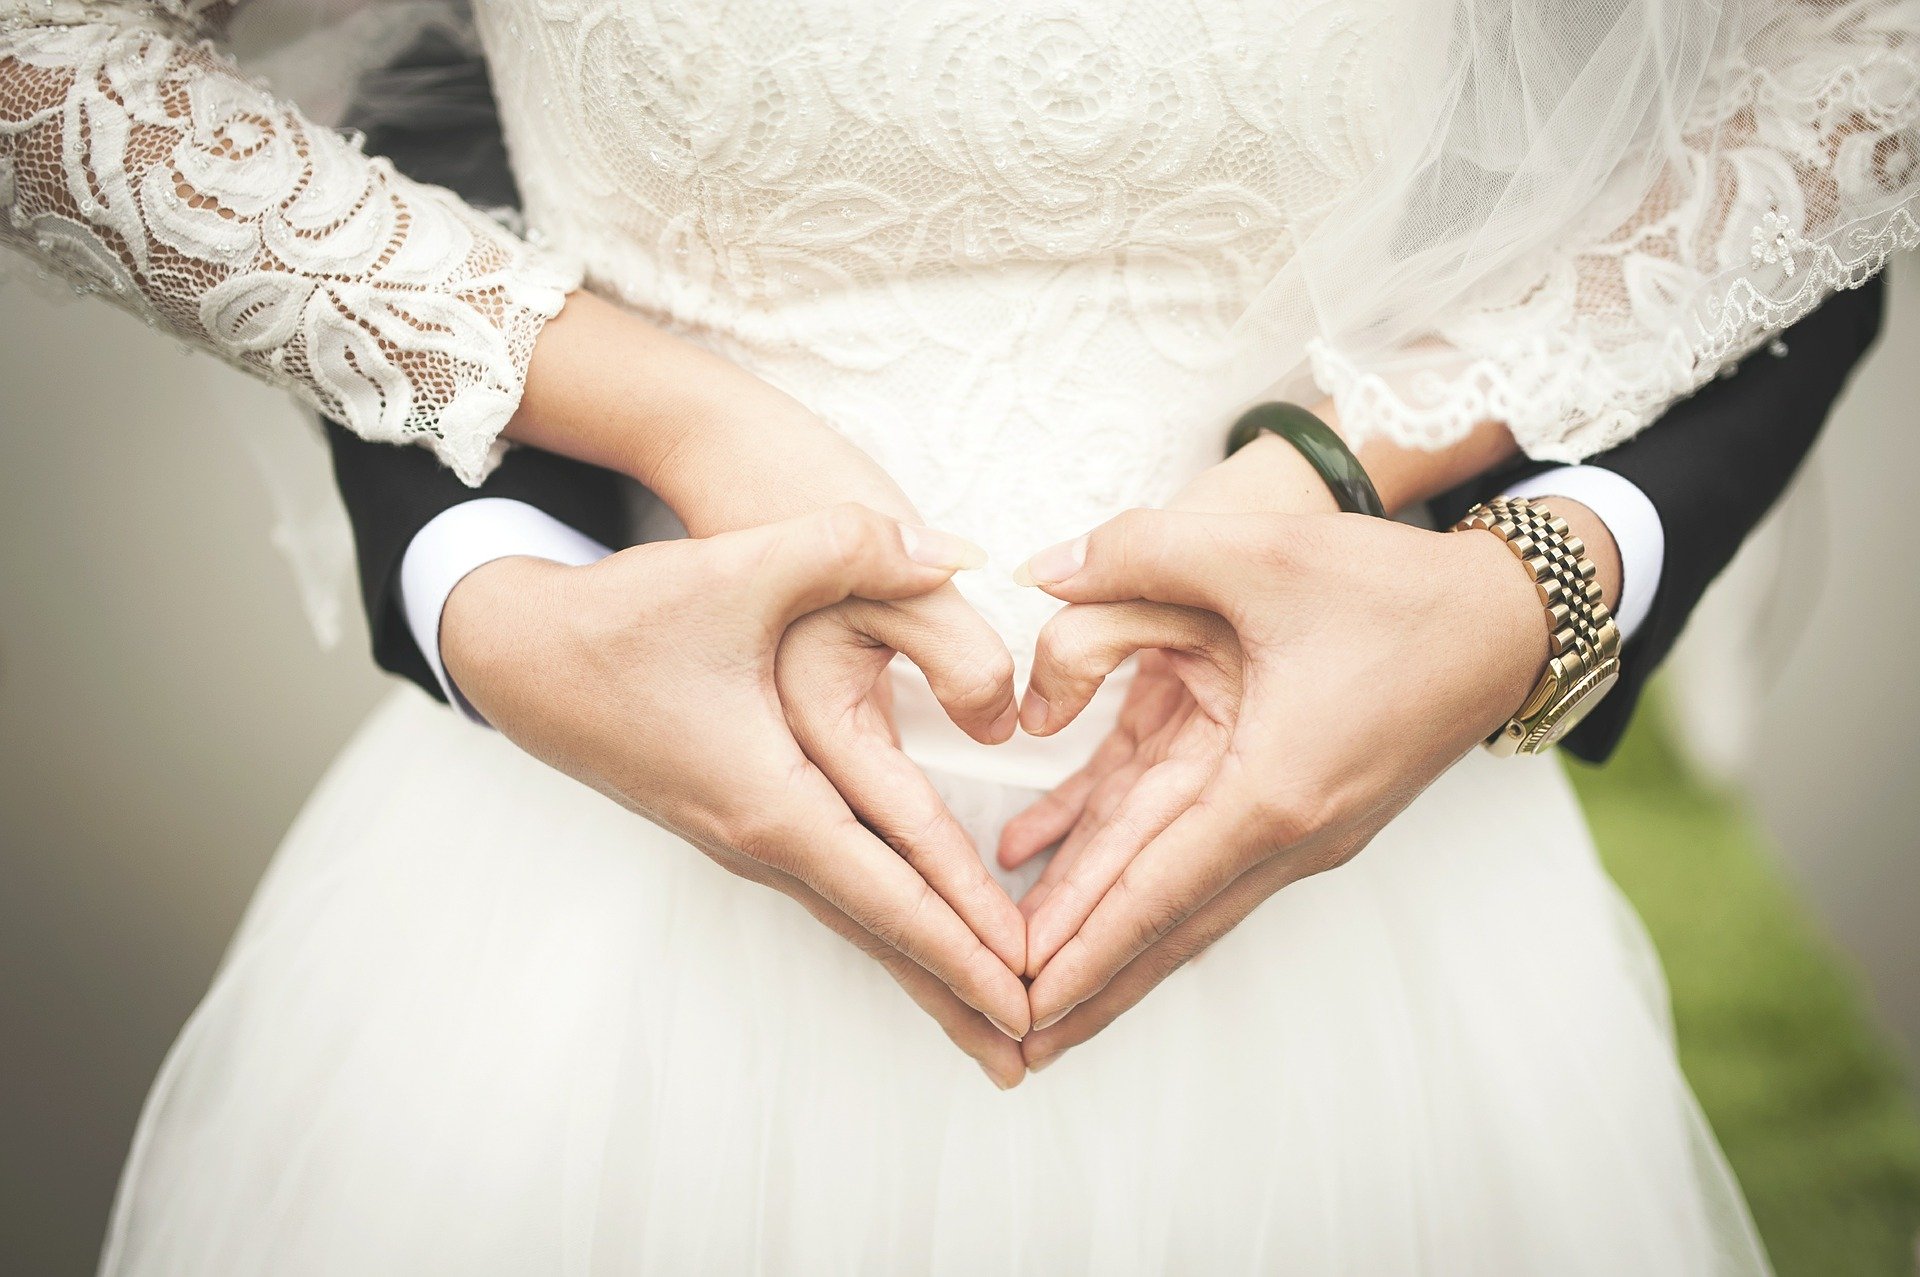 Prawie 400 małżeństw i ponad 60 rozwodów w 2019 roku. |RAPORT| - Zdjęcie główne